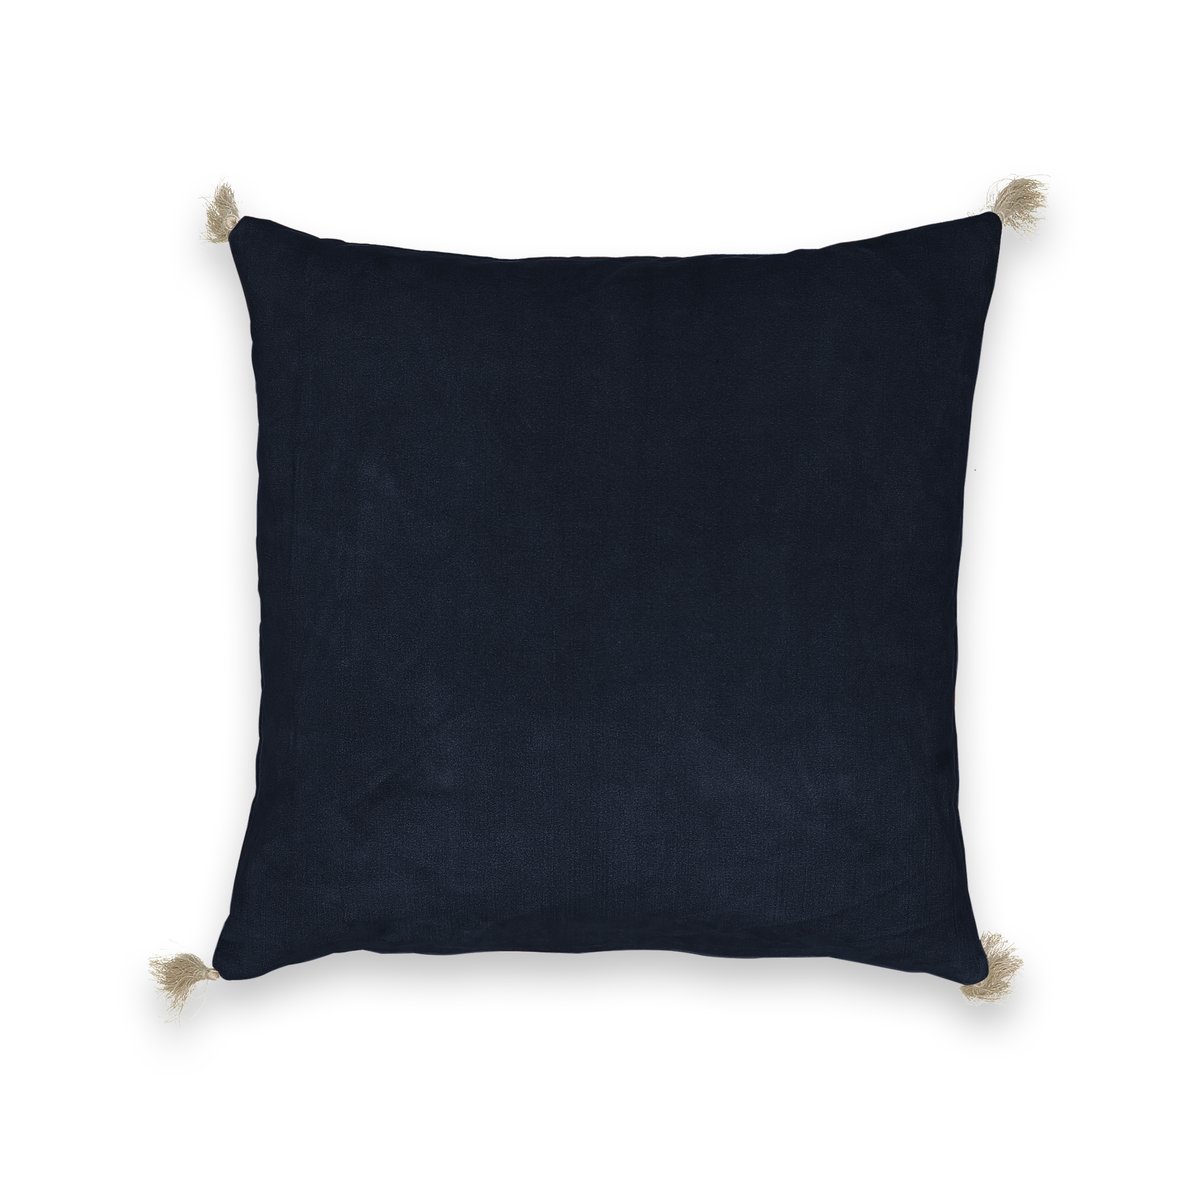 Чехол LaRedoute На подушку велюровый Cacolet 50 x 50 см синий, размер 50 x 50 см